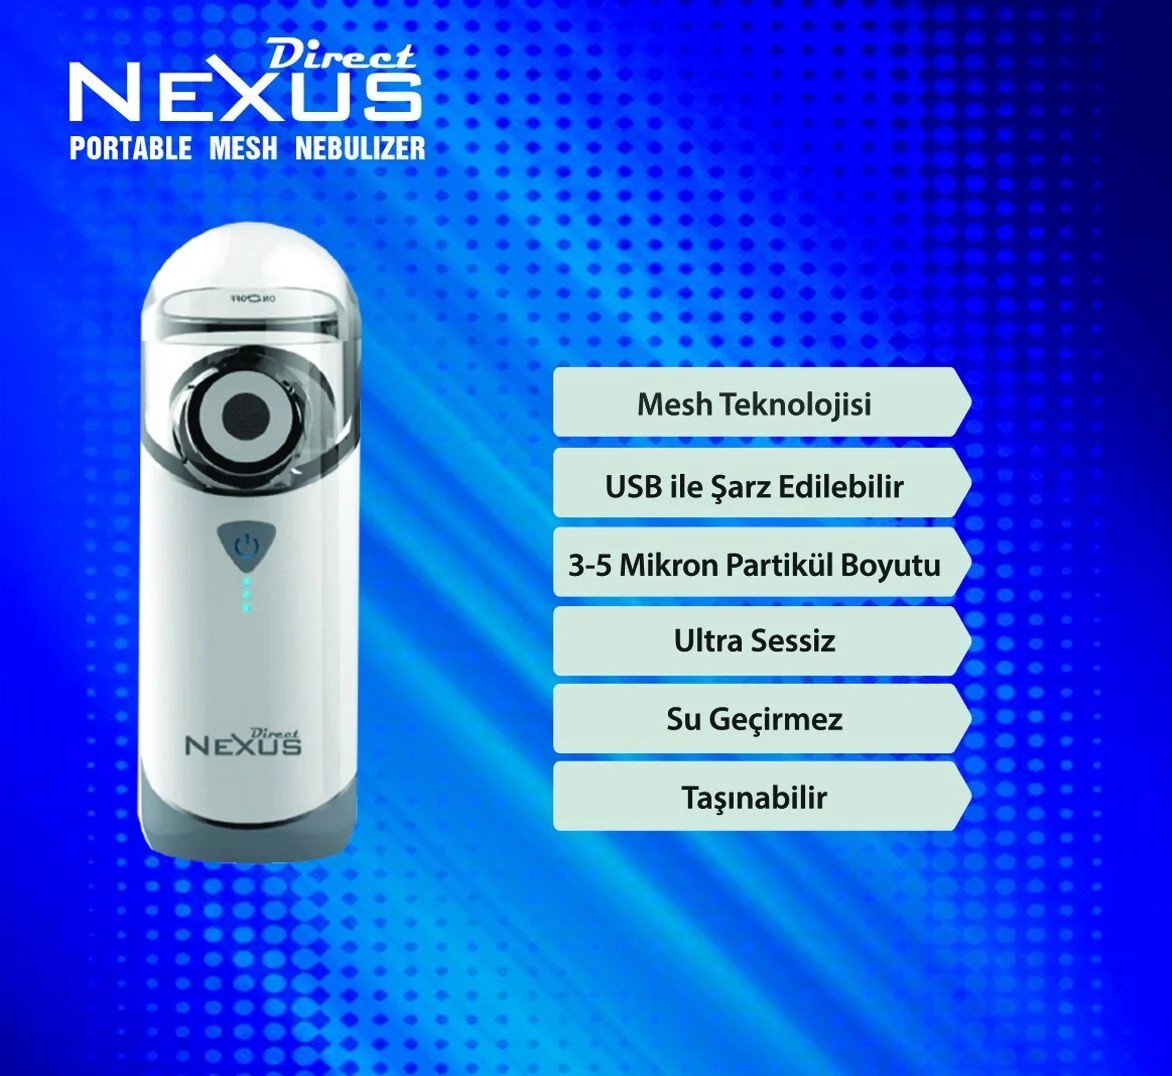 Direct Nexus Portable Mesh Şarjlı Nebulizatör